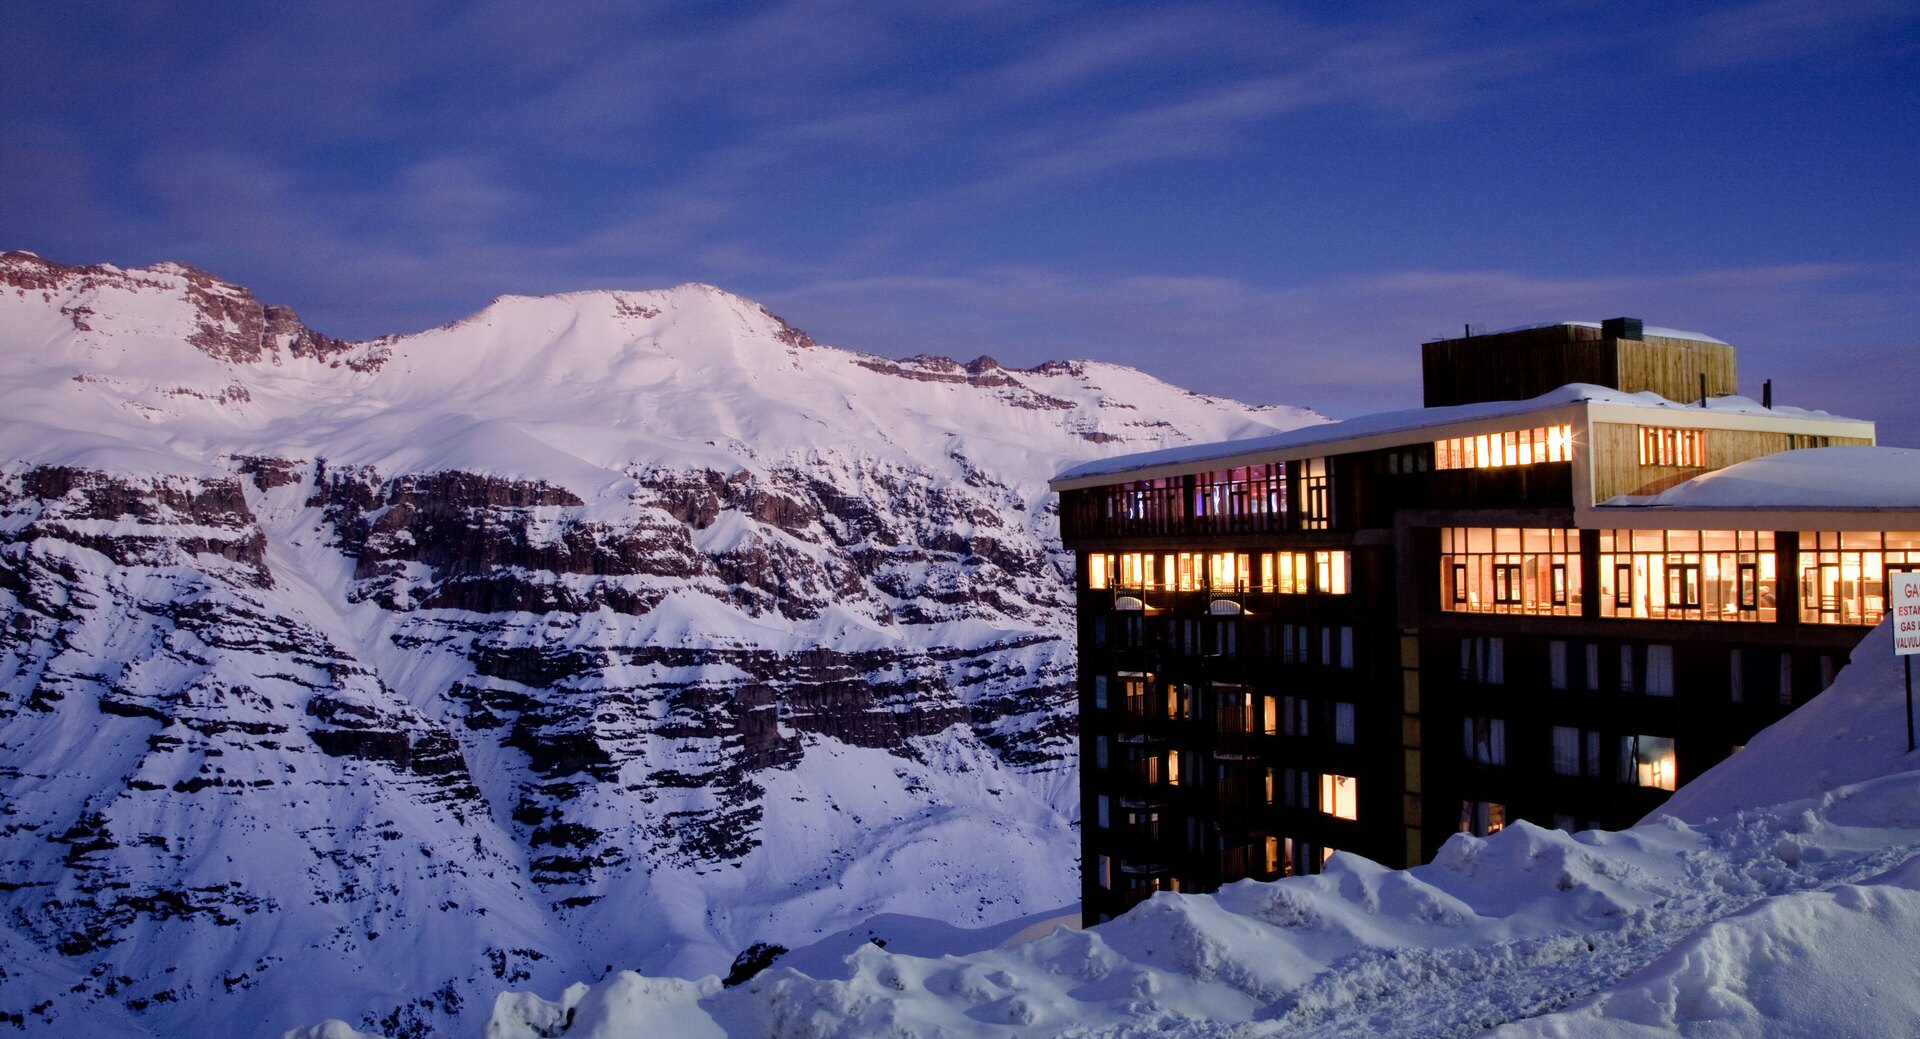 Vista do Hotel Três Puntas, no Valle Nevado Ski Resort Chile